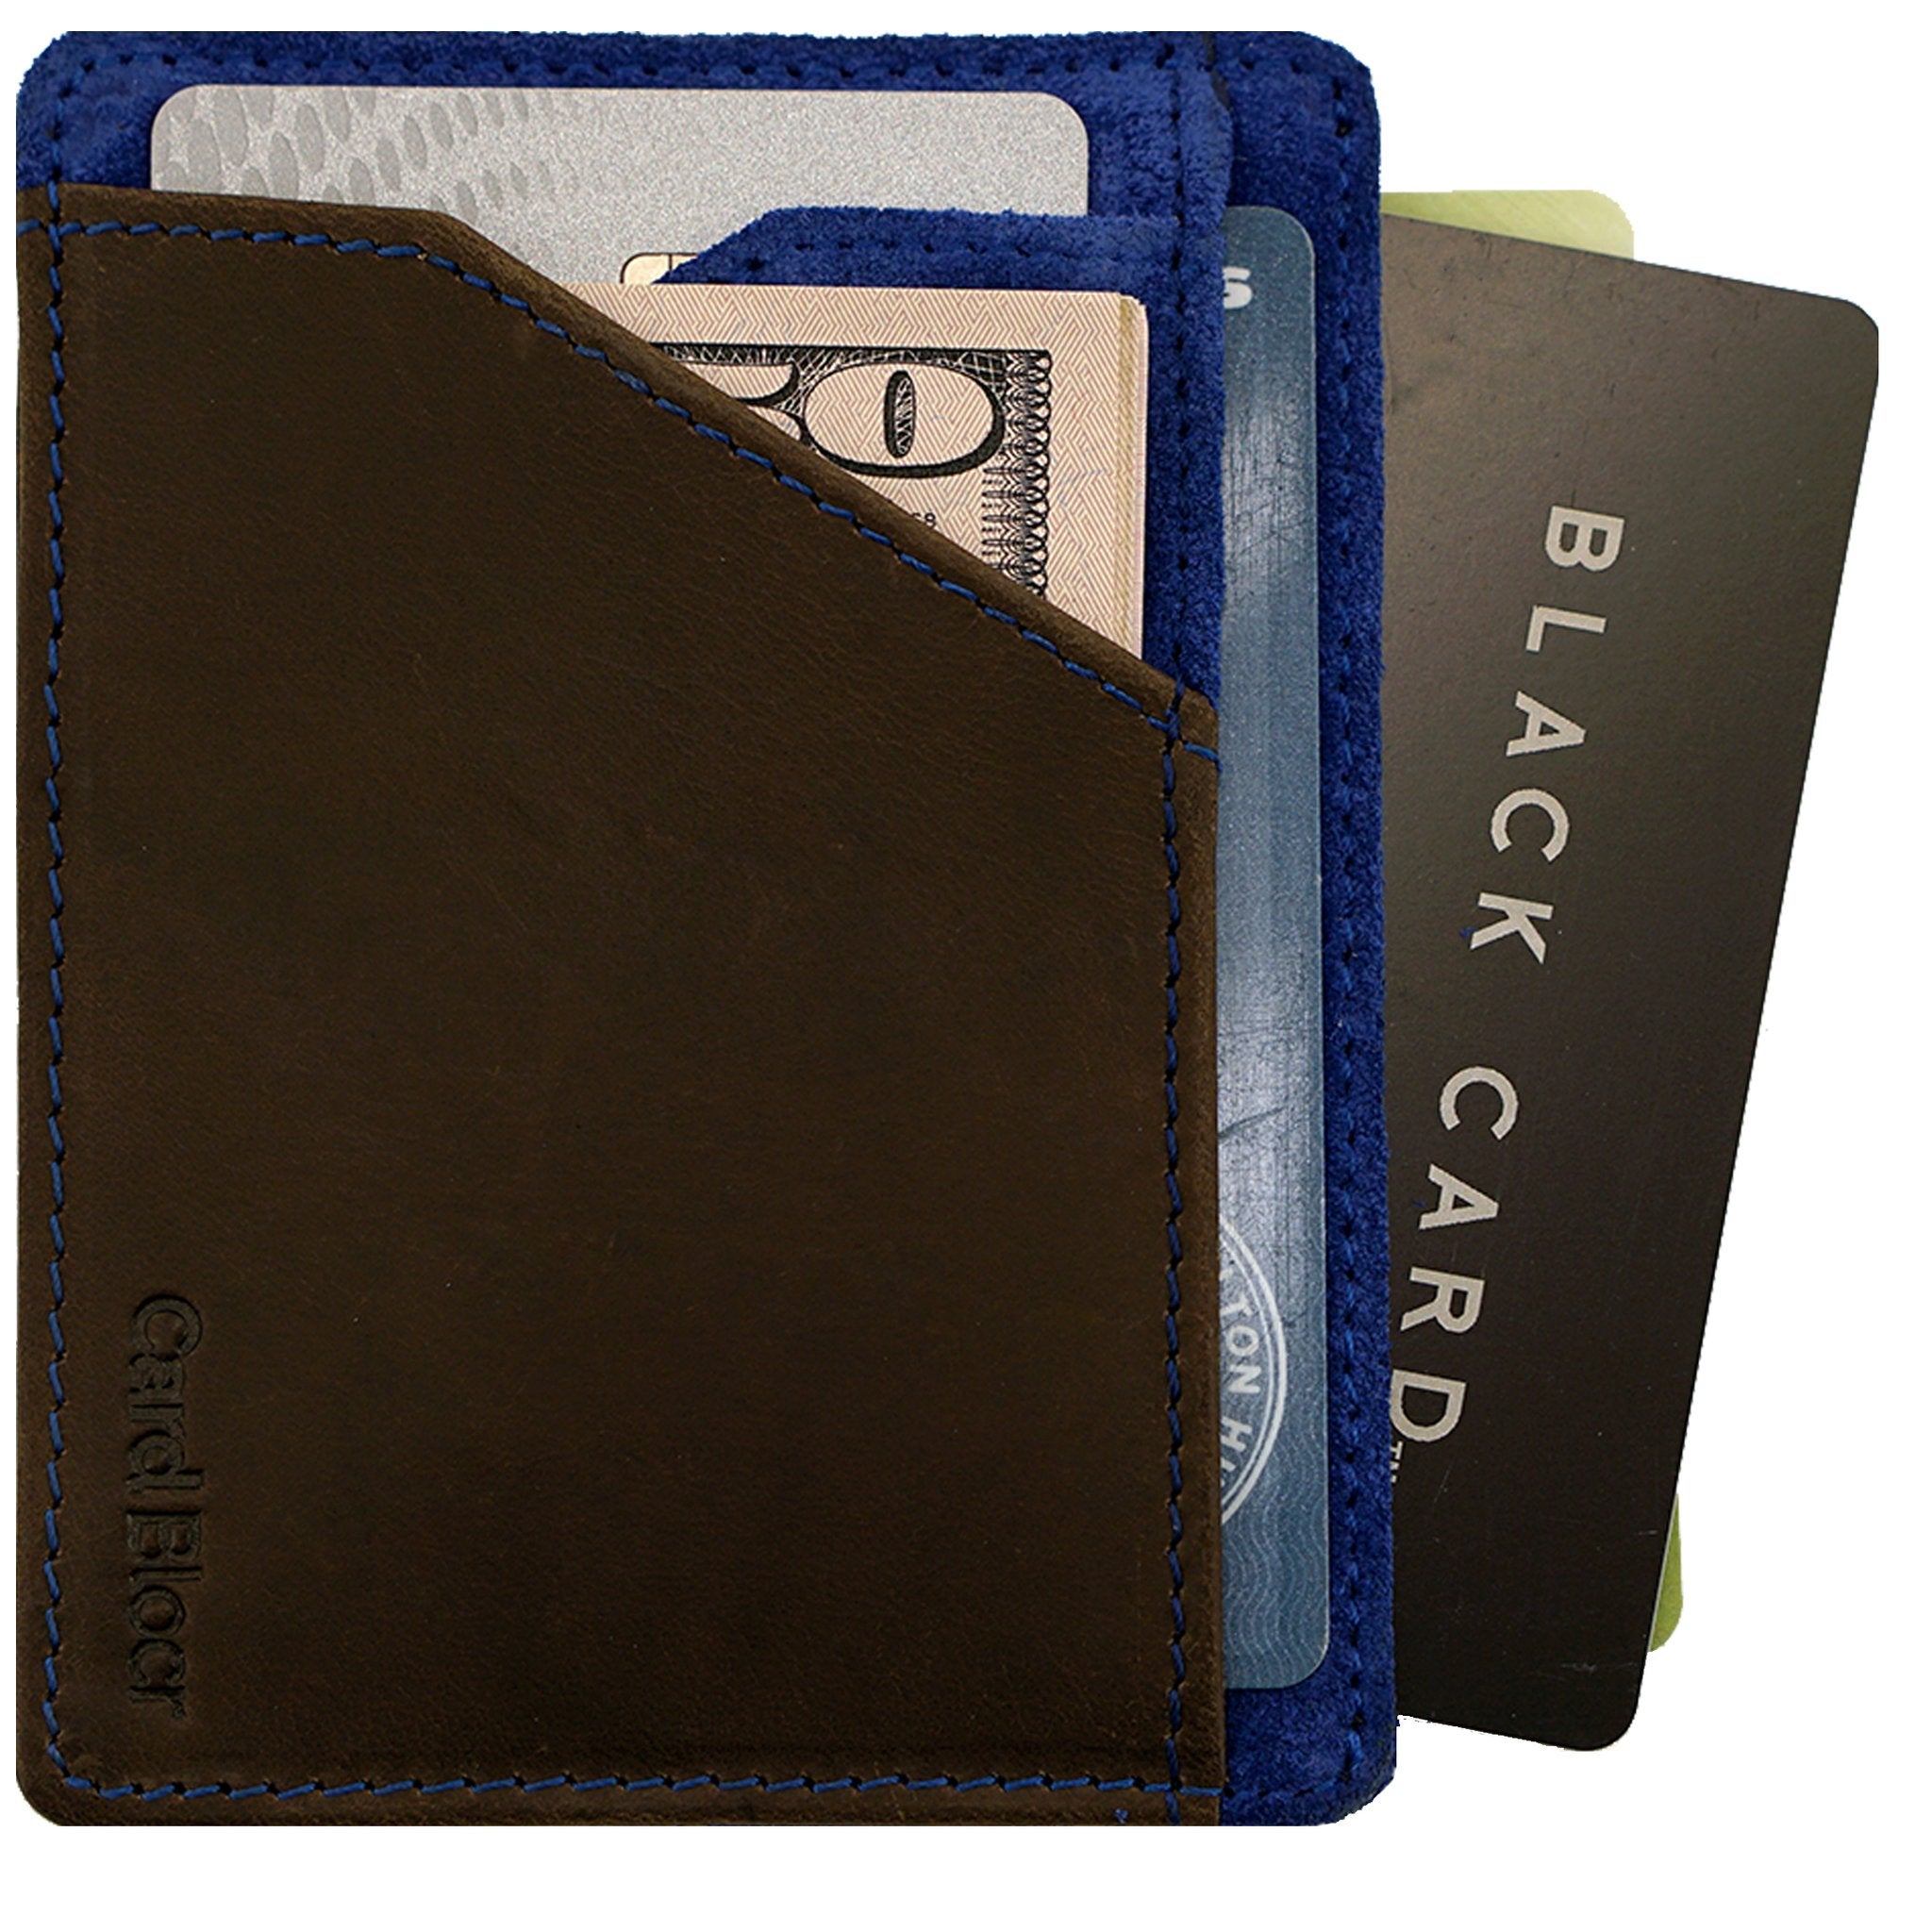 Best Pick Pocket Proof Wallets For Men